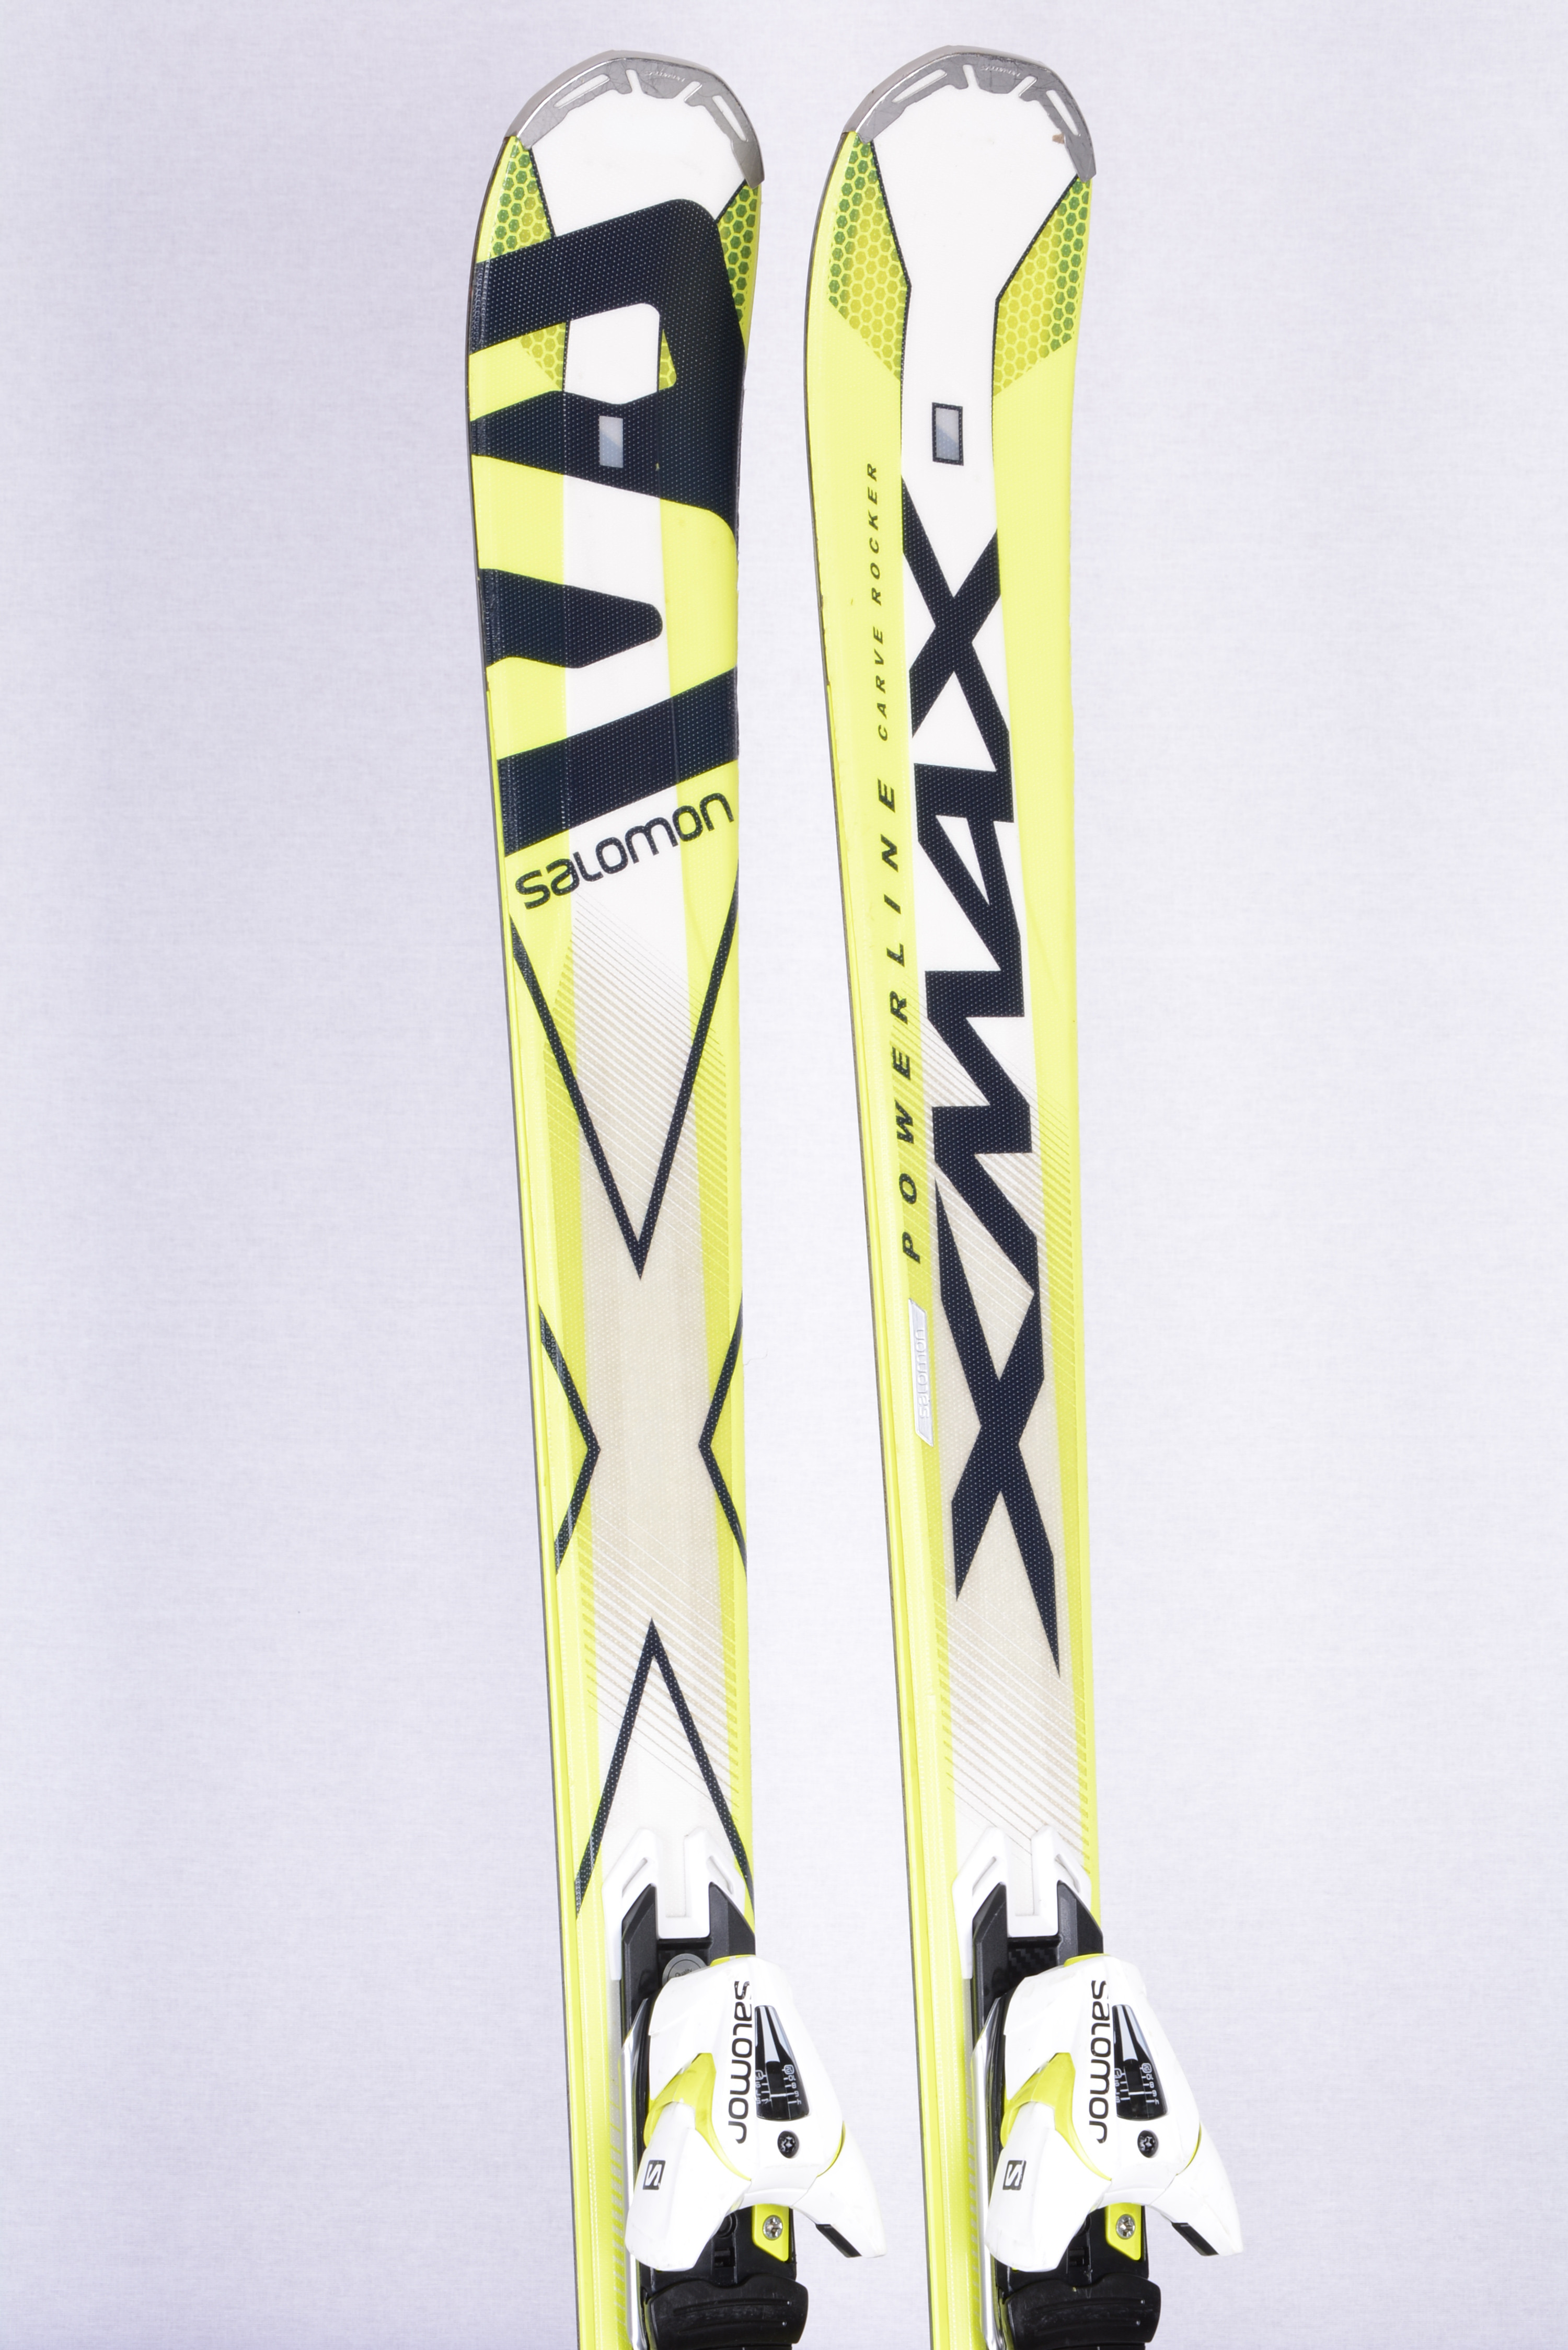 zwaartekracht Tegenwerken Perforatie ski's SALOMON XMAX X10, Powerline carbon, carve rocker, full Ti Backbone +  Salomon XT 12 ( TOP staat ) - Mardosport.nl